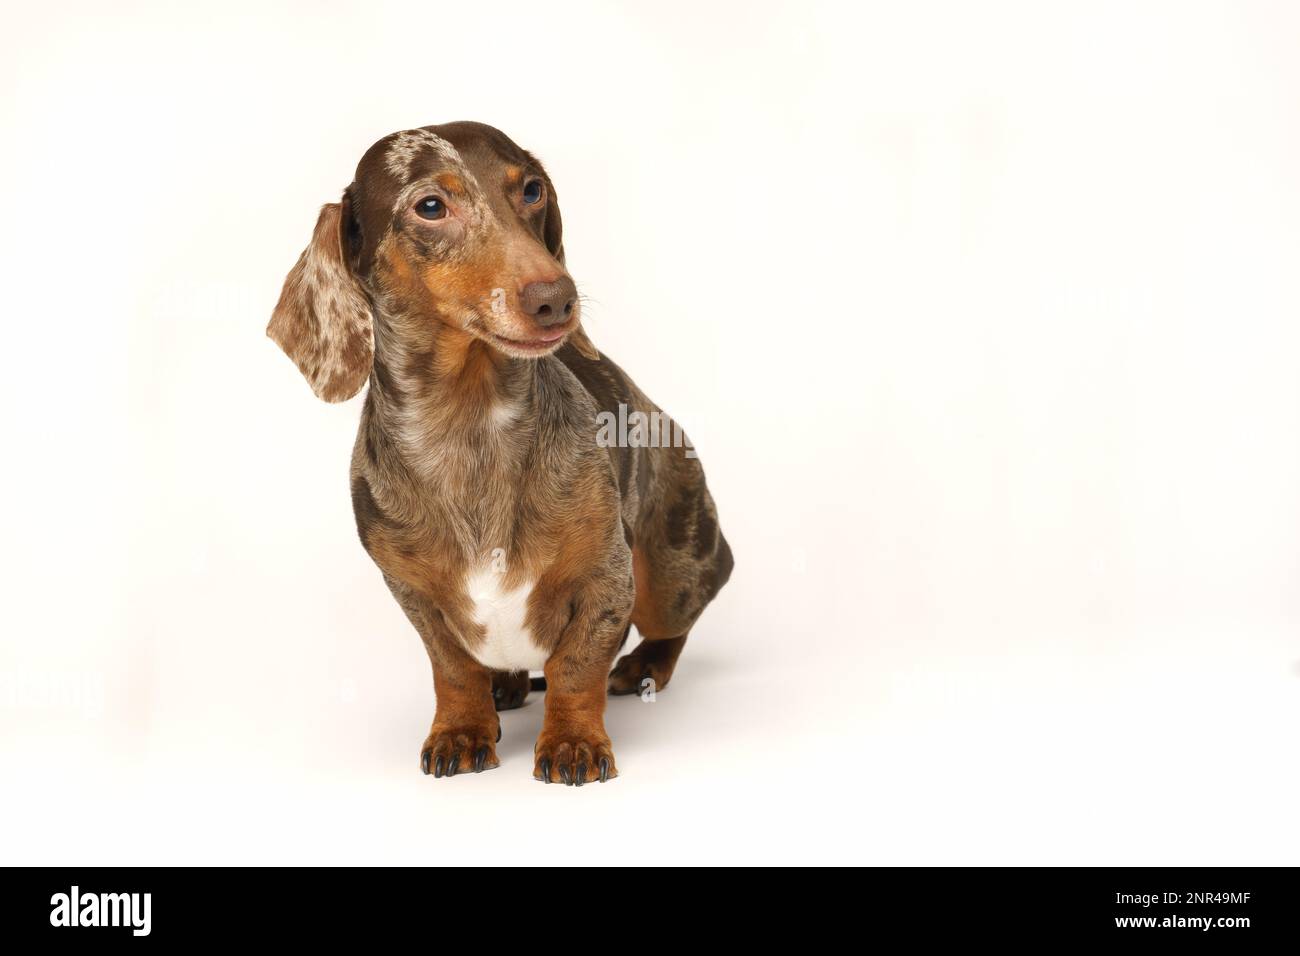 Mini dachshund di coniglio, cappotto marmorizzato. Isolato su sfondo bianco in studio Foto Stock